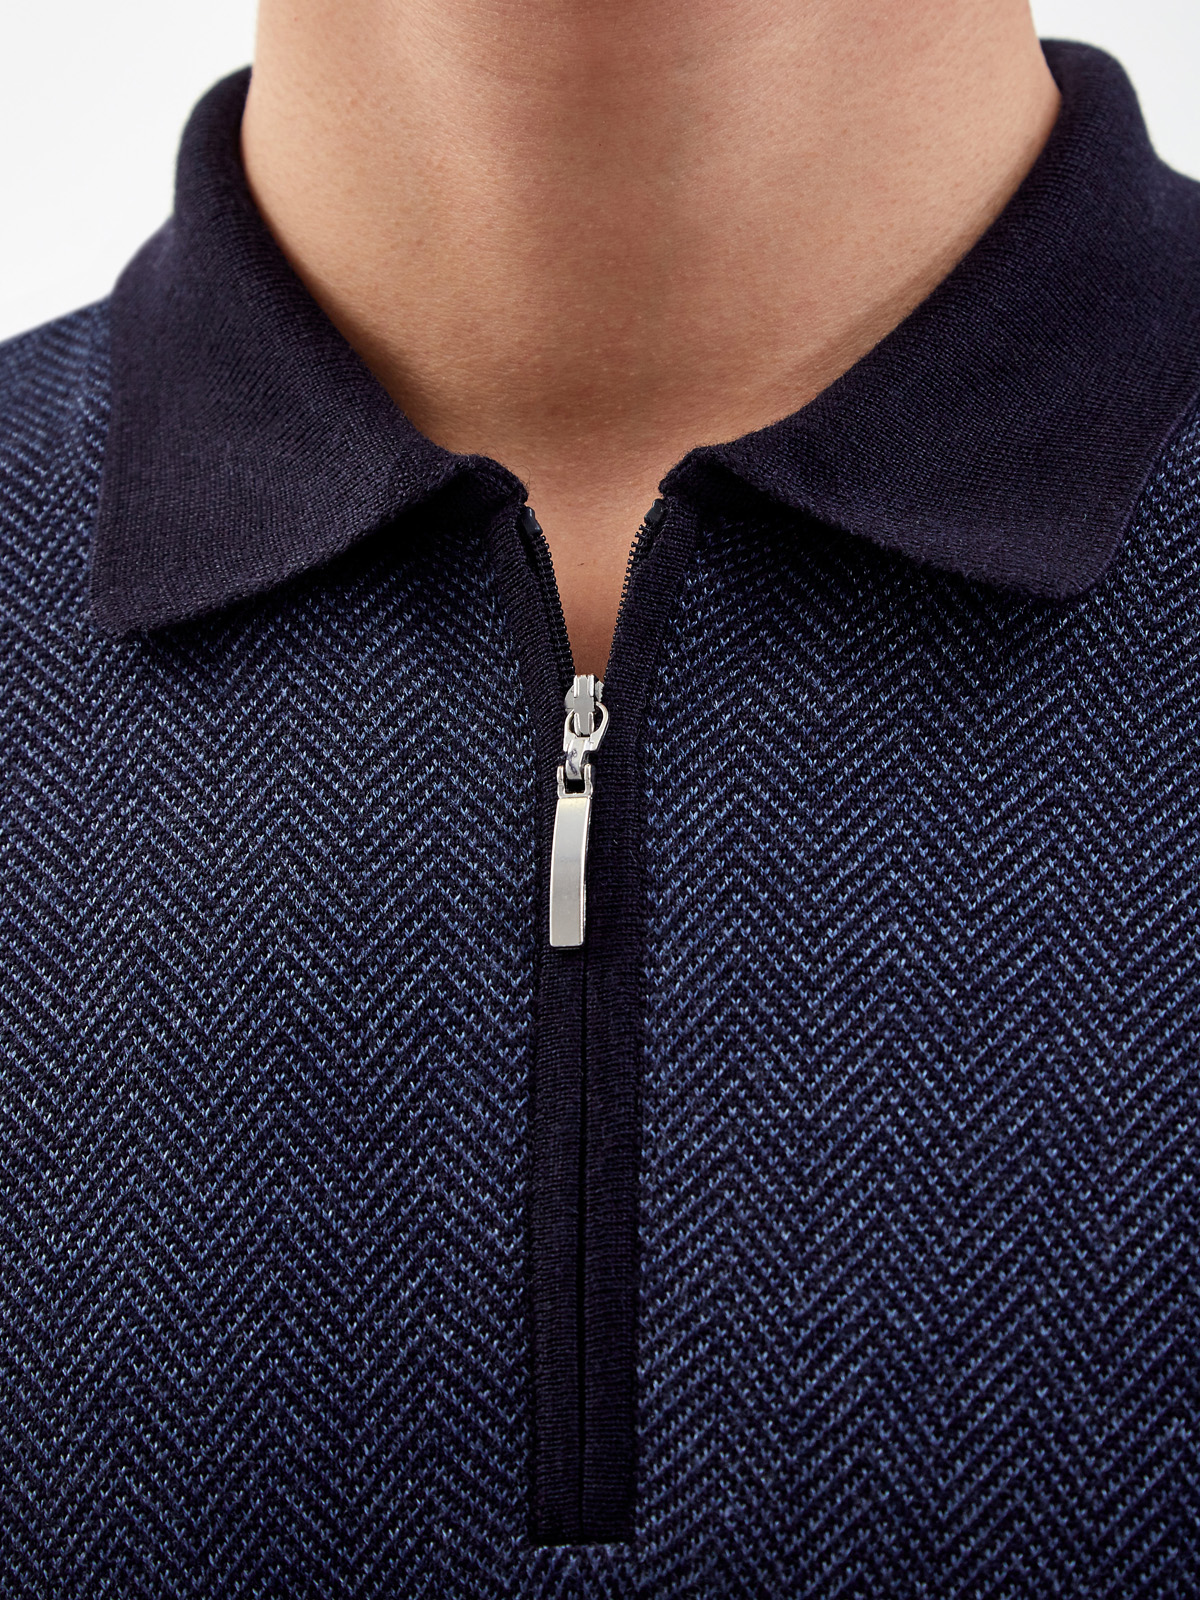 Джемпер-поло из шерсти и шелка с застежкой на молнию GRAN SASSO, цвет синий, размер 54;56;60;58;52 - фото 3